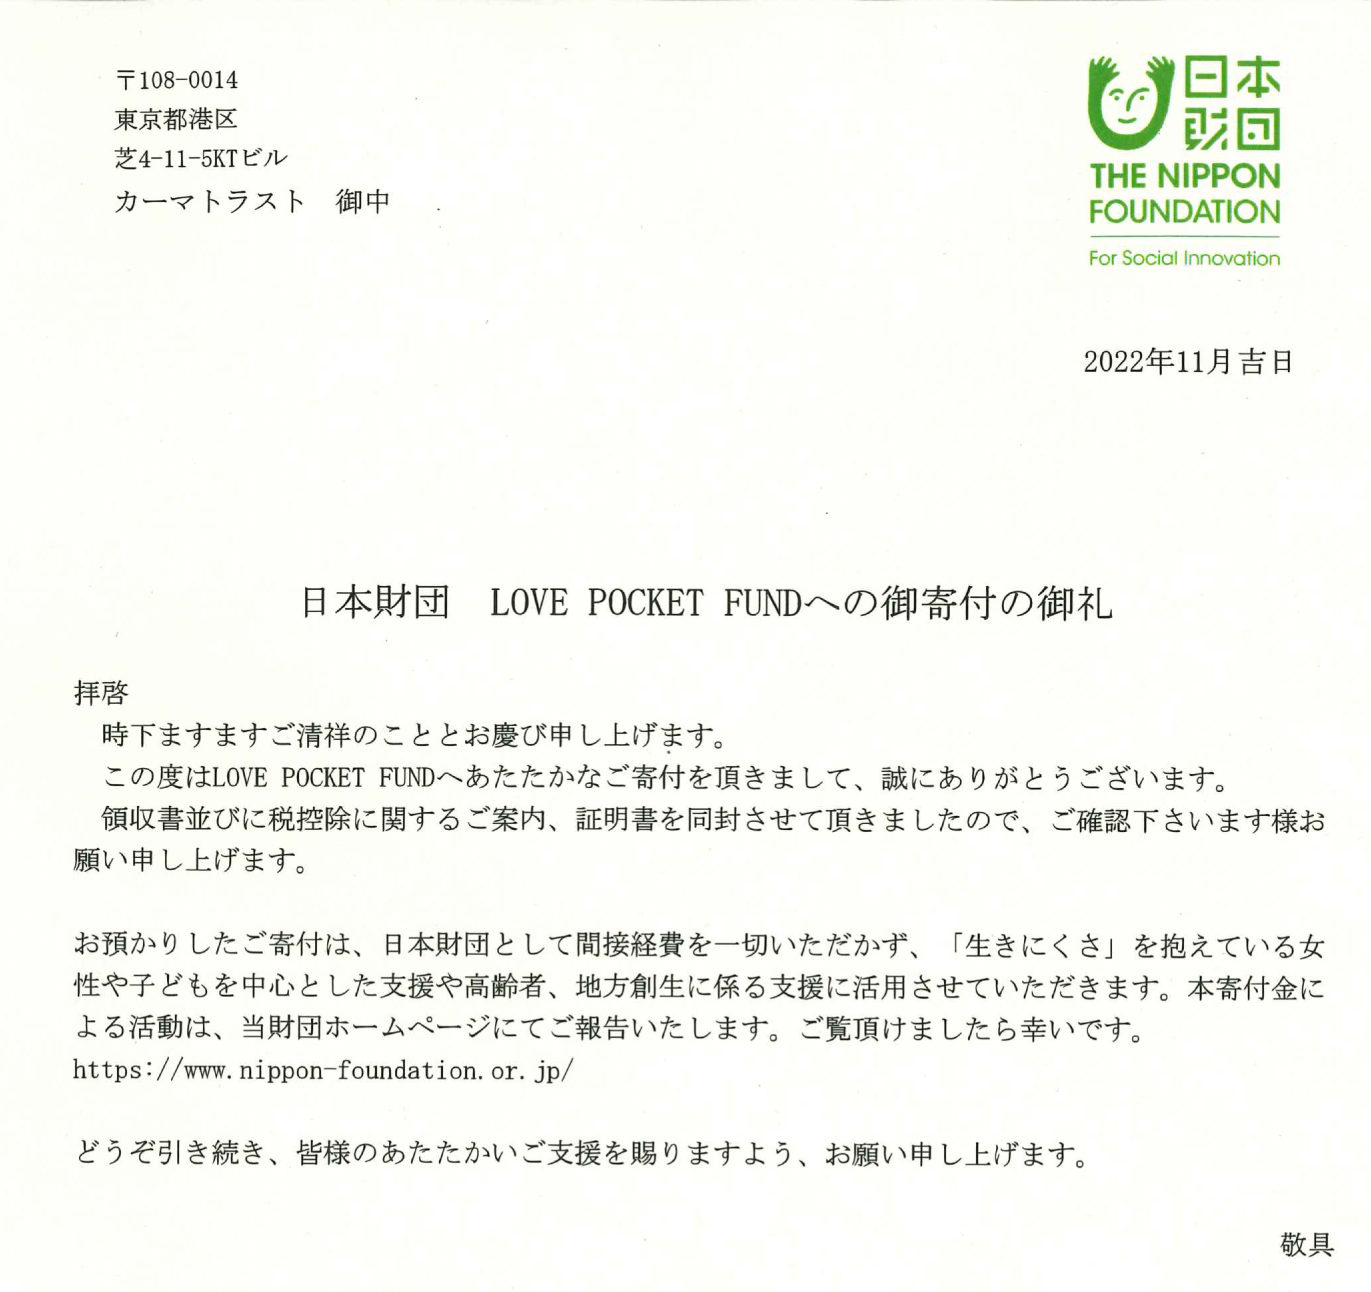 第2回チーム対抗戦・ウォーキング大会を実施しました。前回よりも着実に歩数を増やすことが出来ました！（前回比109.87％）全体の平均歩数合計に応じた金額を、日本財団の「LOVE　POCKET　FUND（愛のポケット基金）」へ募金させて頂きました。